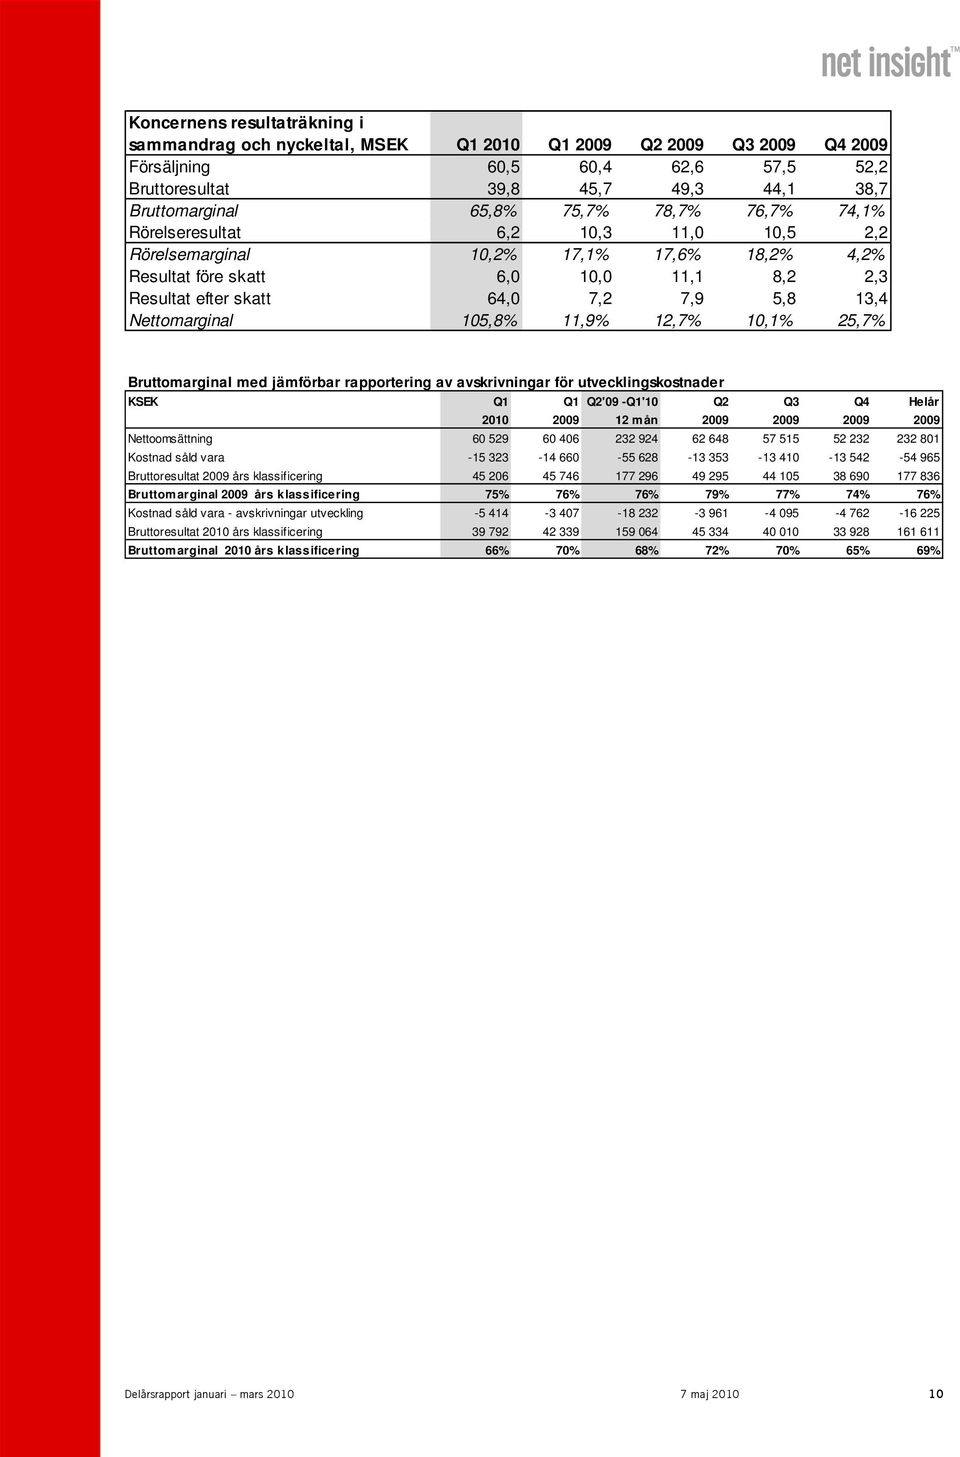 Nettomarginal 105,8% 11,9% 12,7% 10,1% 25,7% Bruttomarginal med jämförbar rapportering av avskrivningar för utvecklingskostnader KSEK Q1 Q1 Q2'09 -Q1'10 Q2 Q3 Q4 Helår 2010 2009 12 mån 2009 2009 2009